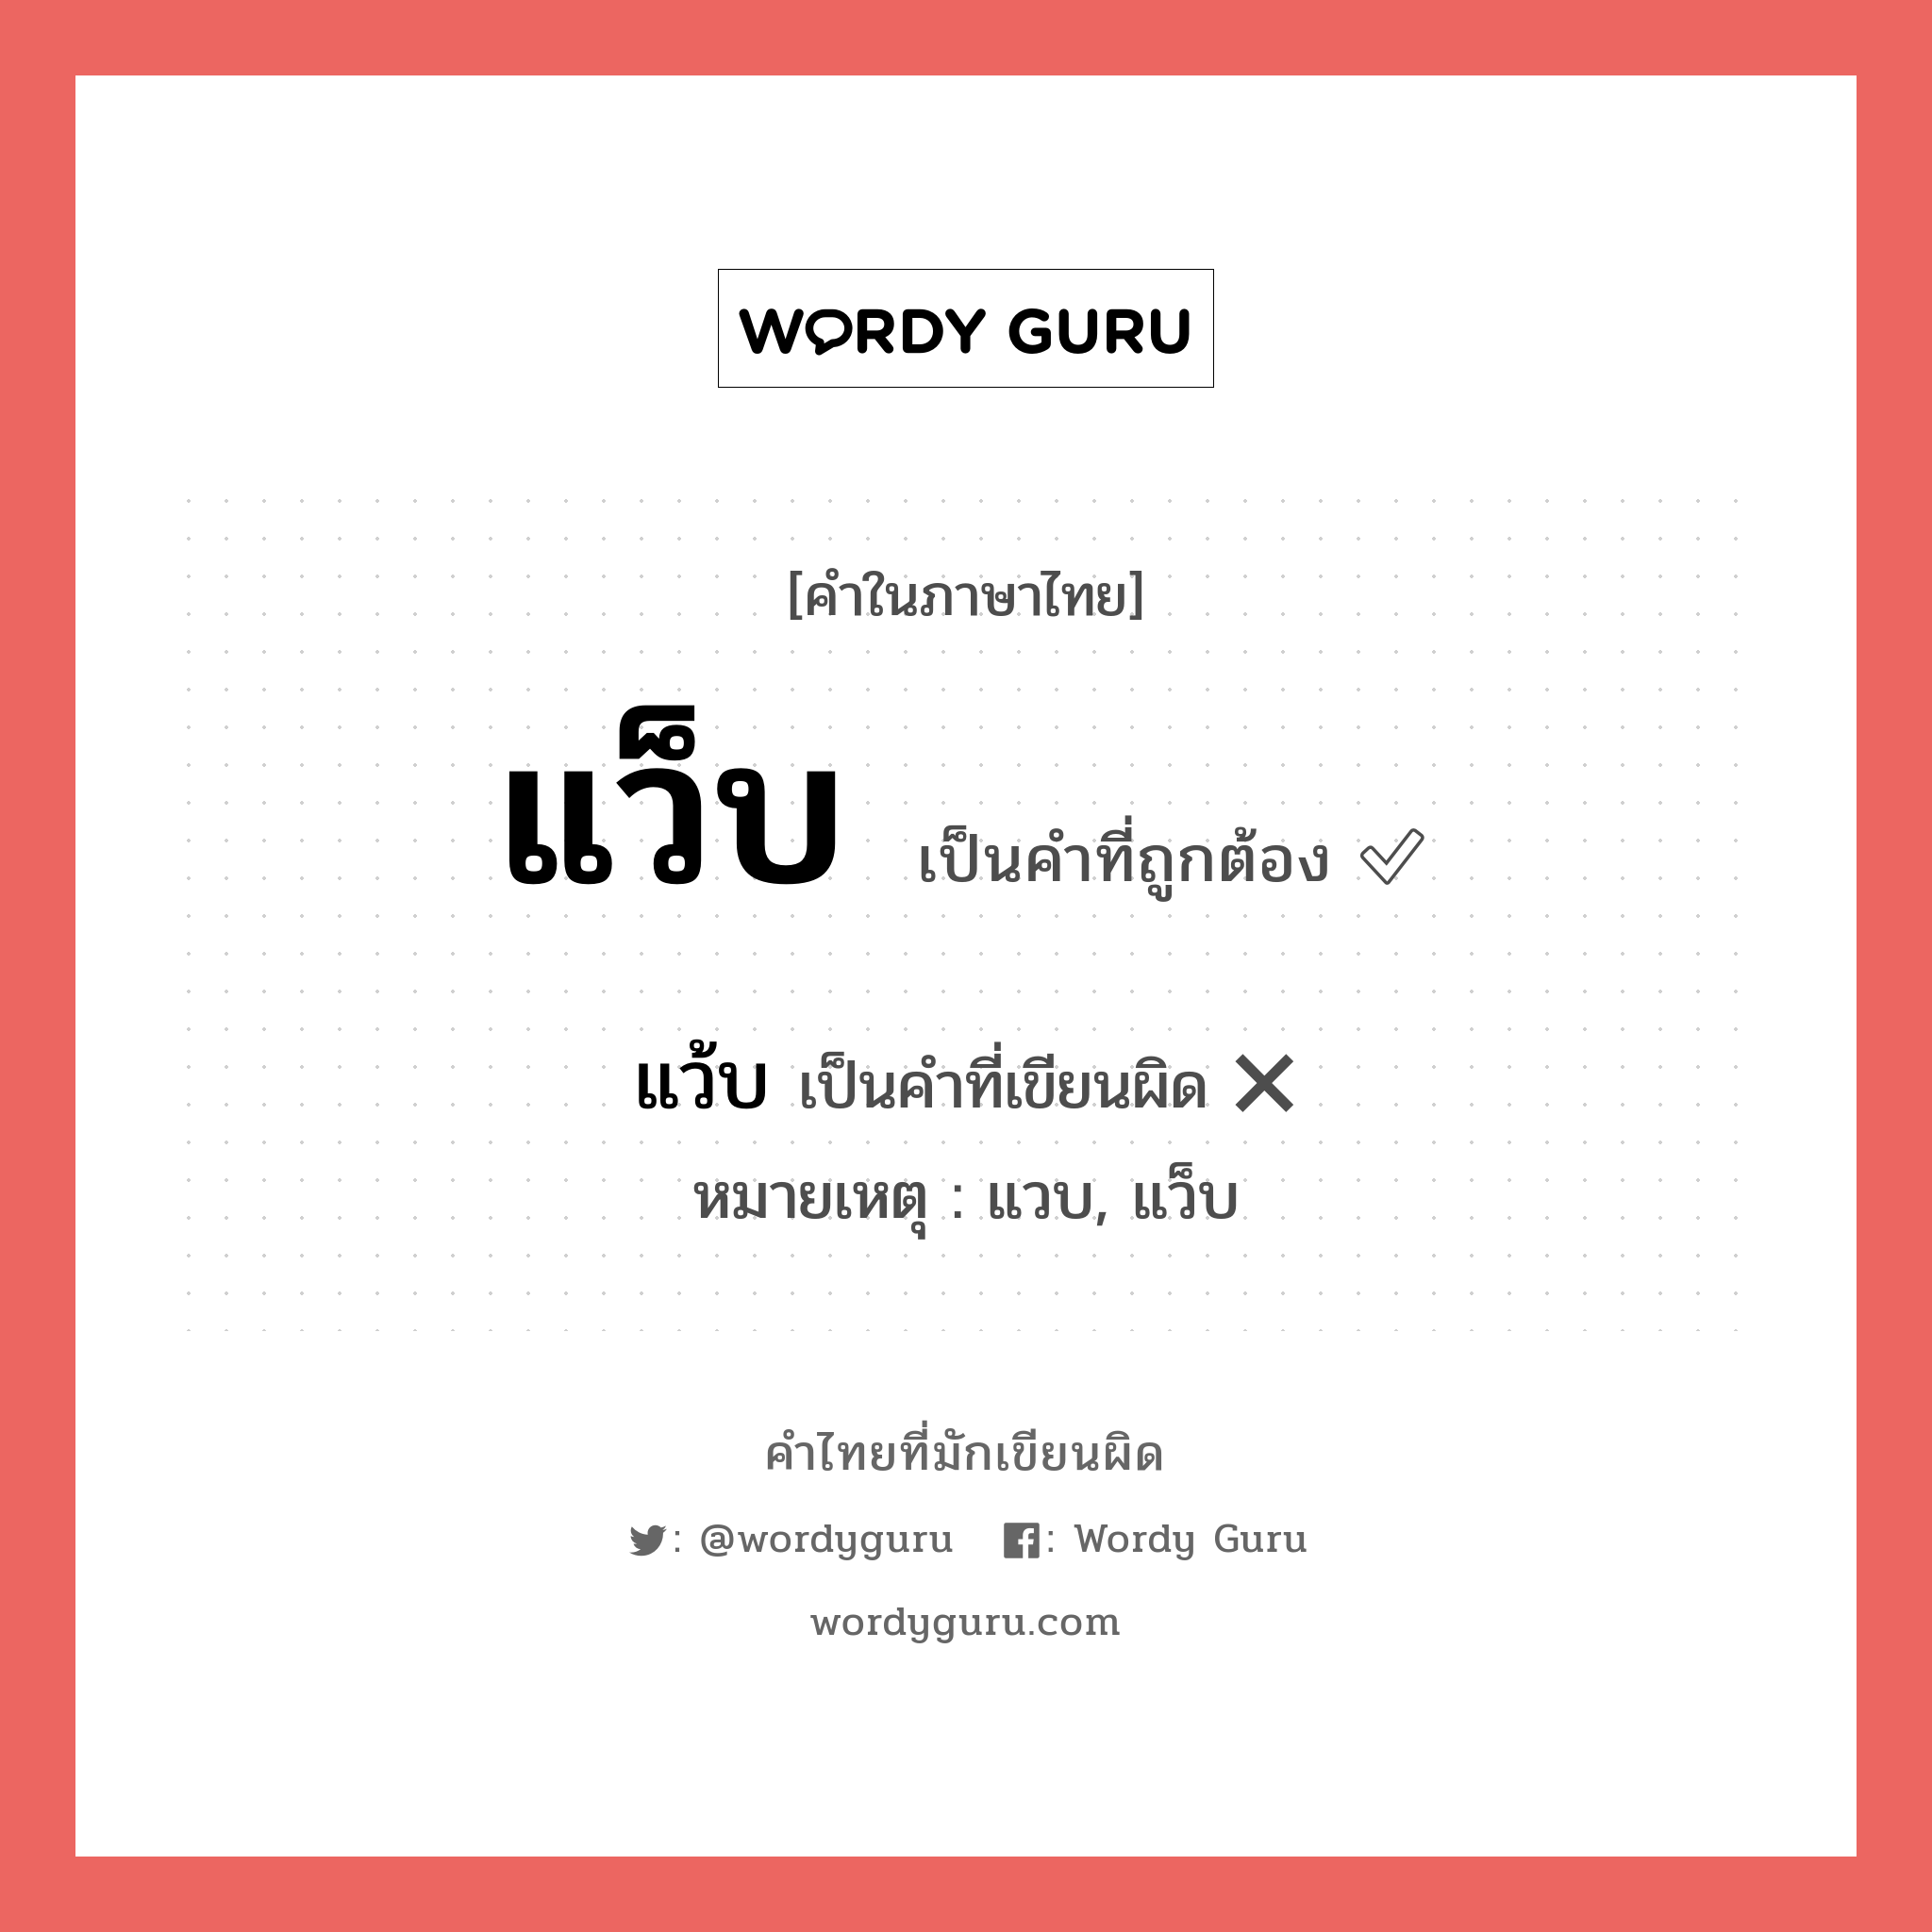 แว็บ หรือ แว๊บ คำไหนเขียนถูก?, คำในภาษาไทยที่มักเขียนผิด แว็บ คำที่ผิด ❌ แว้บ หมายเหตุ แวบ, แว็บ